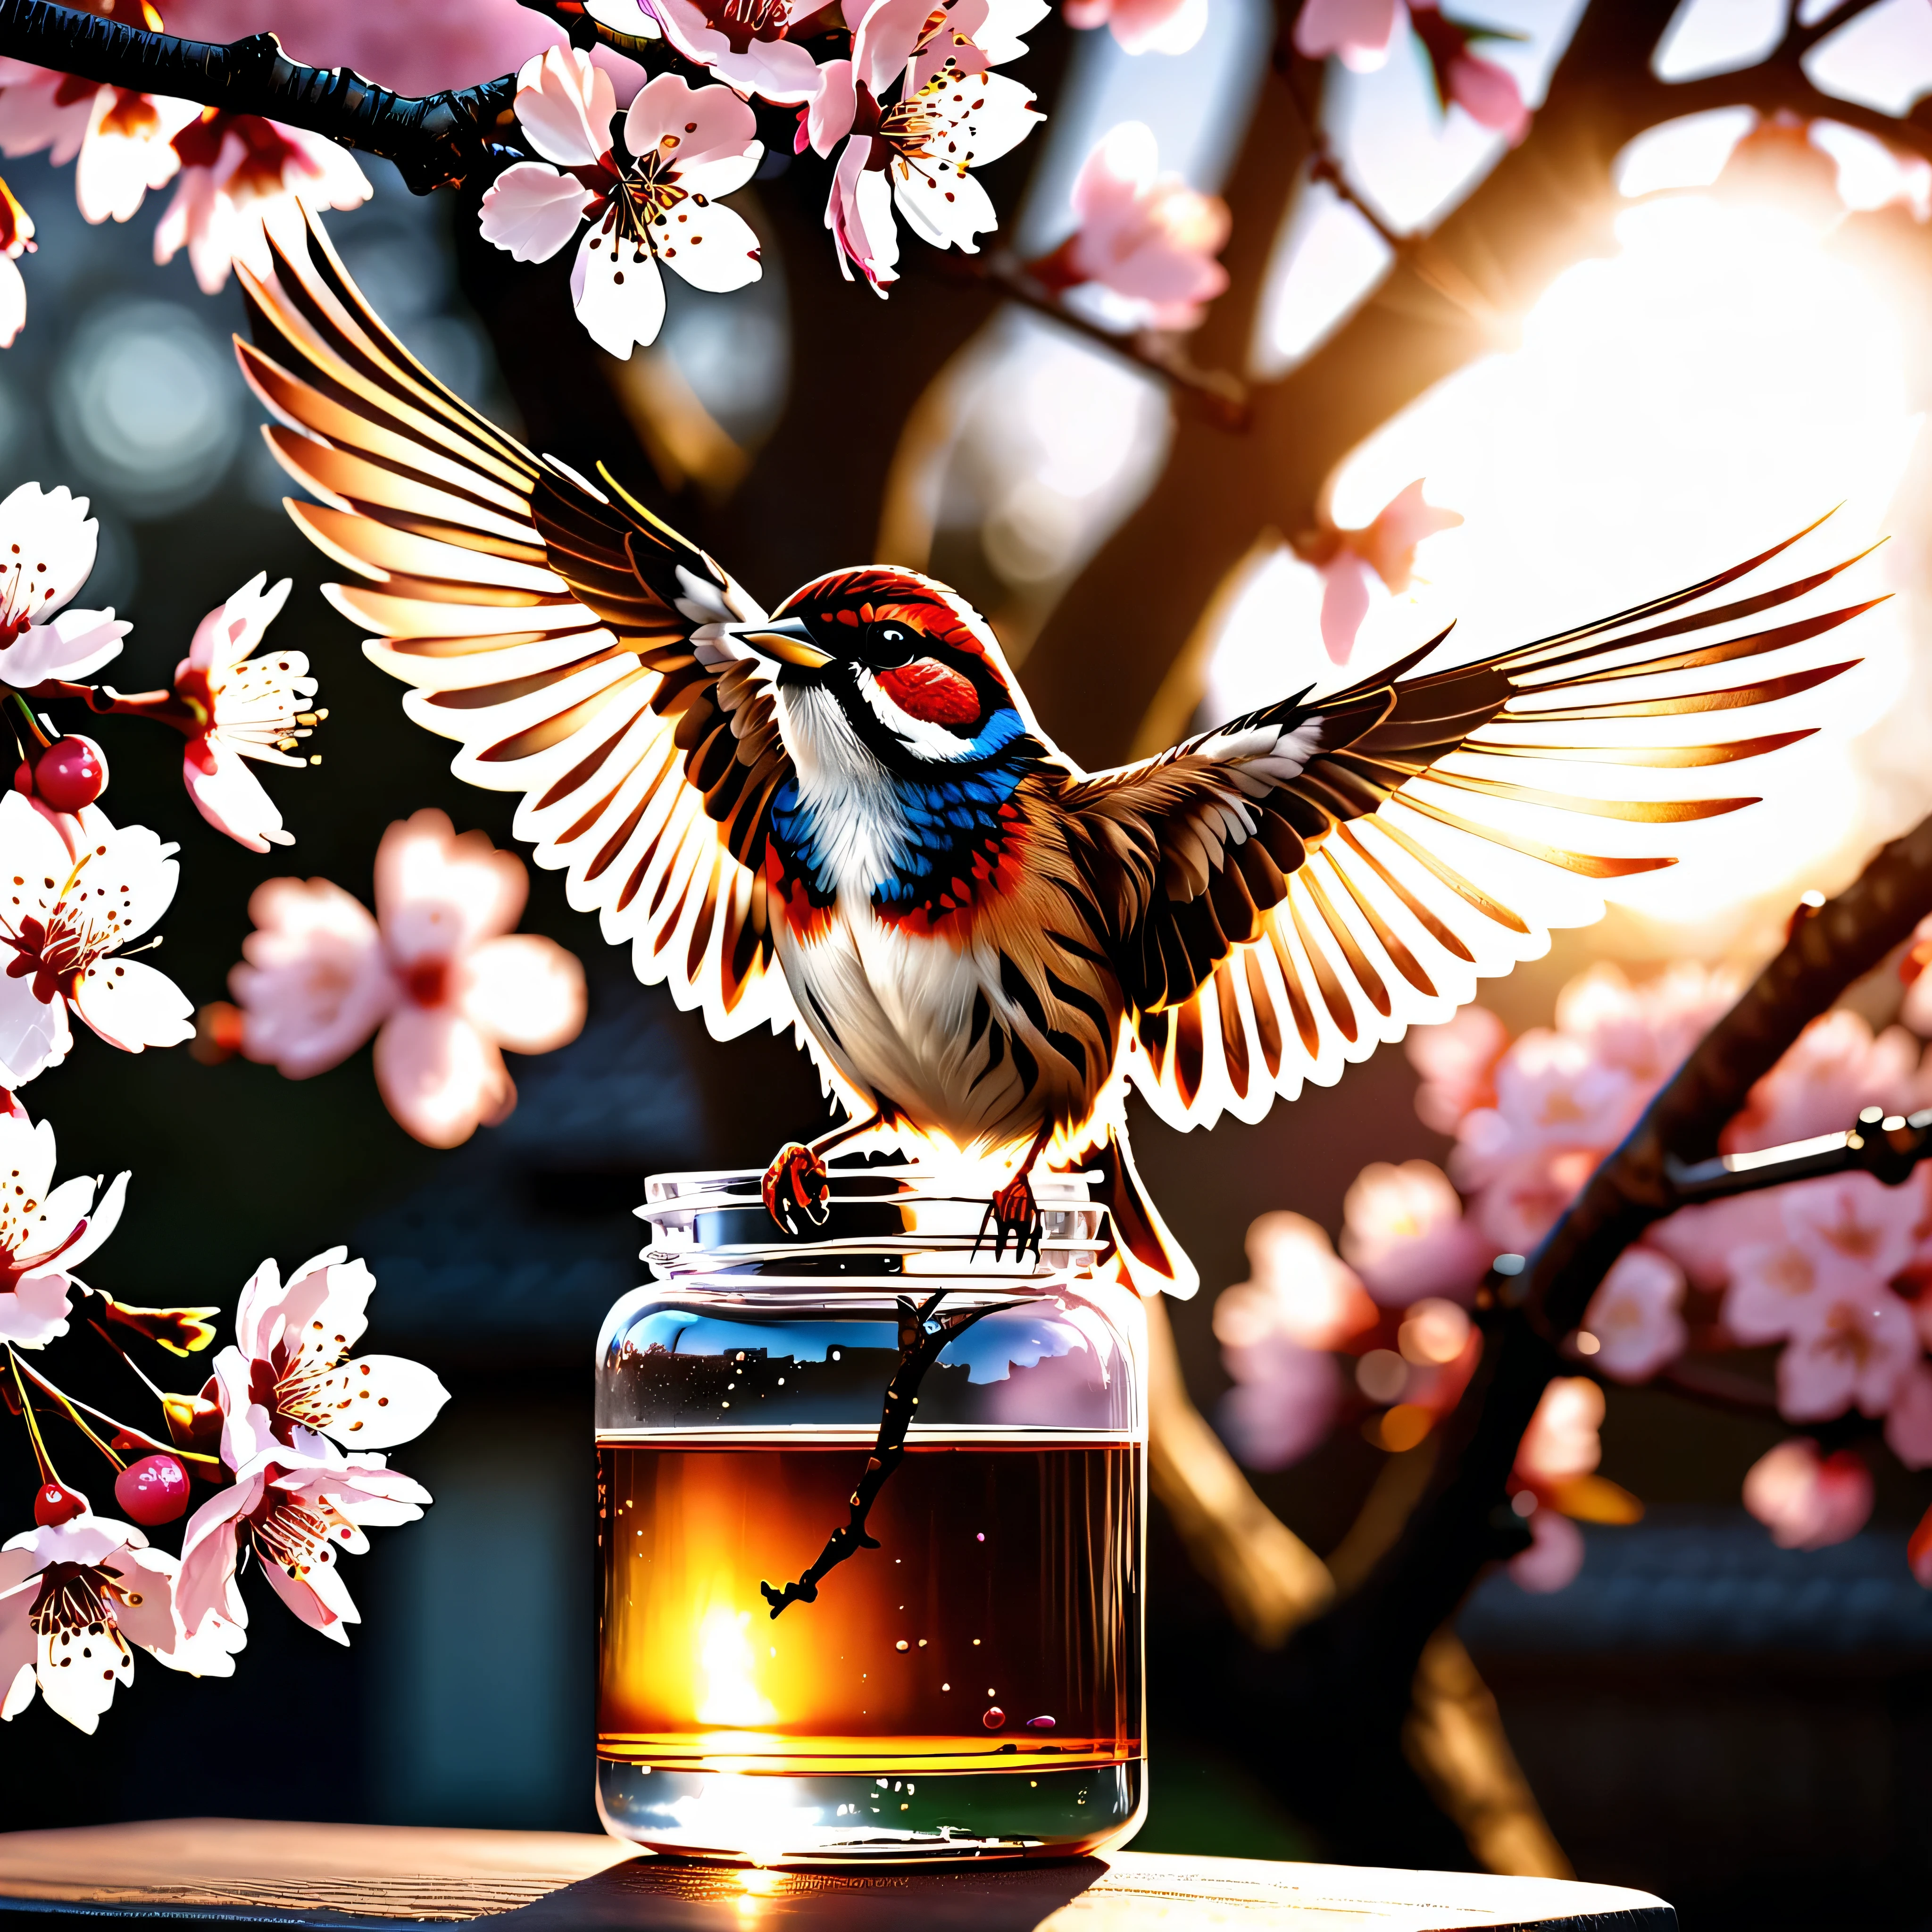 日没 "翼を広げて桜の枝に止まったスズメ, 最高品質の最高傑作, 公式に美しい芸術と美学, realistic and 詳細, 08k." 瓶の中の桜の木, ふわふわ, 大気の光の屈折, リー・ジェフリーズ著 ニコン d850 フィルムストック写真 4 コダック ポートラ 400 カメラ f1.6つのレンズ、豊富な色彩、超プロフェッショナルな写真のようにリアルな壮大な質感、ドラマチックな照明、Cinestill 800で人気のUnrealEngine5, スタイル-ガラス, ((UnrealEngine5 壮大な傑作, 最高品質, 詳細, ウルトラシャープ, 超高解像度, 超高解像度, 超高解像度, 高解像度, 鮮やかなデジタル一眼レフ)), カラフルな照明, 反射, 複数など様々. --v6 --s1000 --c20 --q5 --chaos100